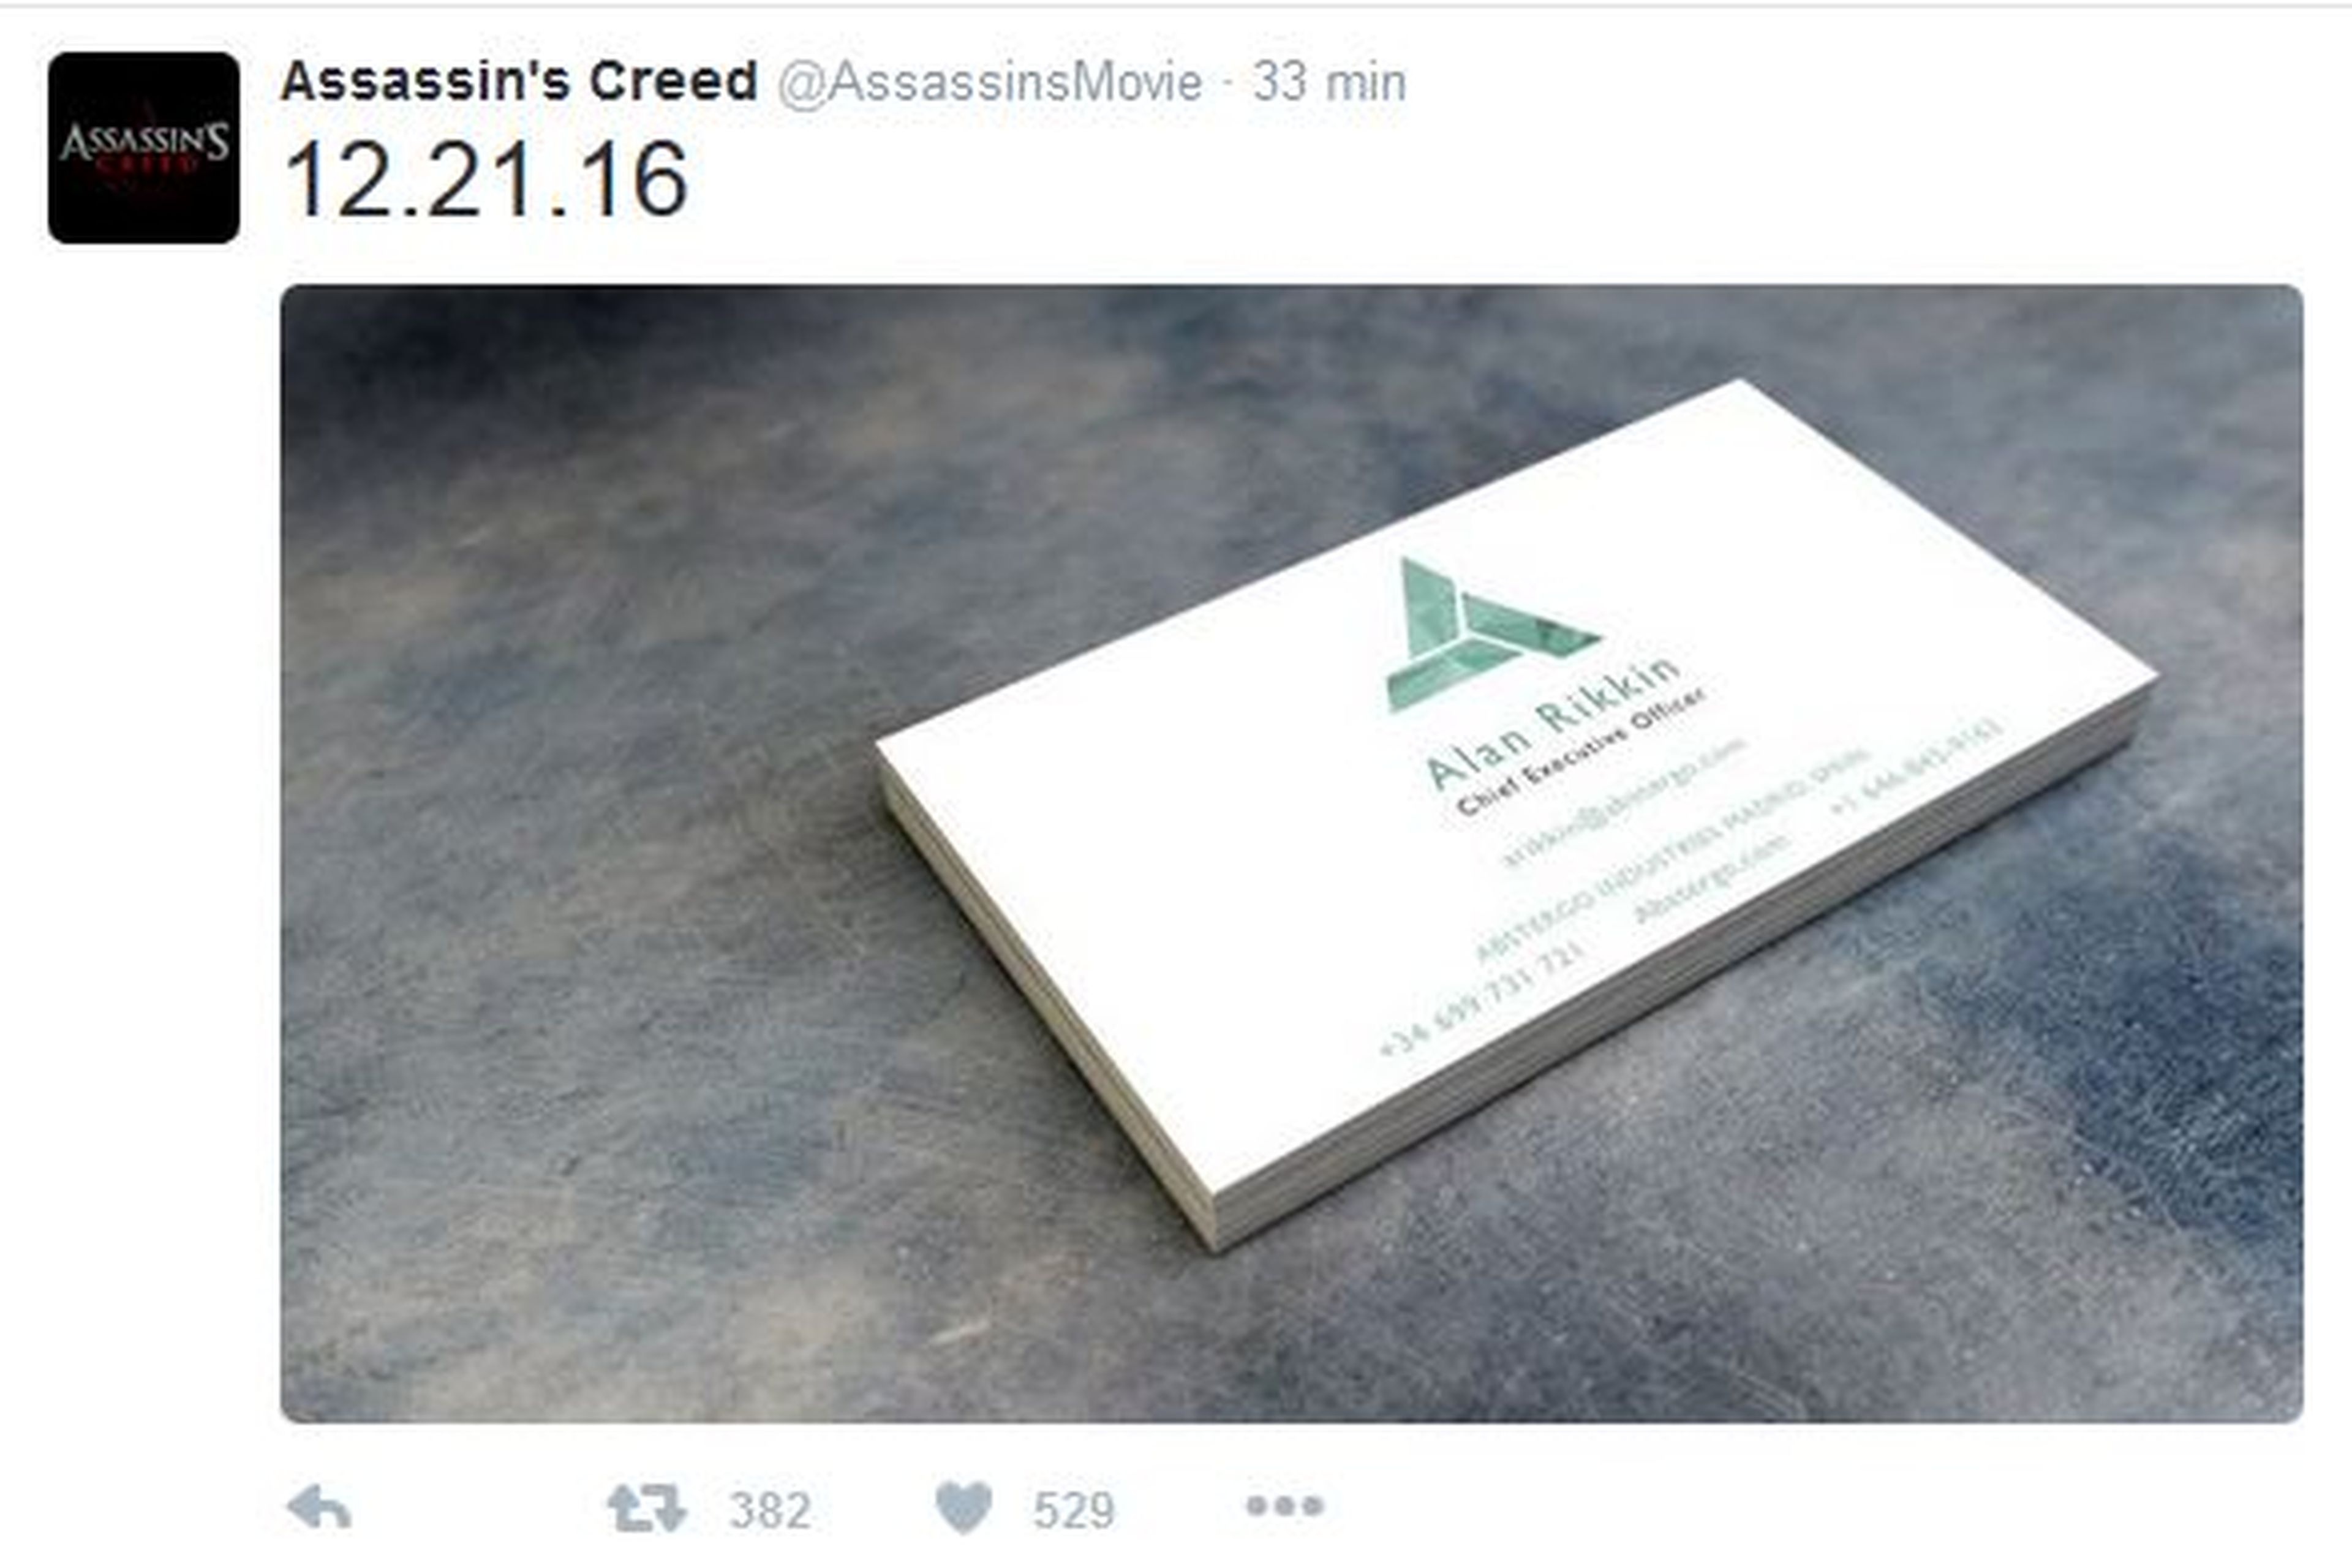 La película de Assassin's Creed y su misteriosa campaña viral. ¿Abstergo en Madrid?